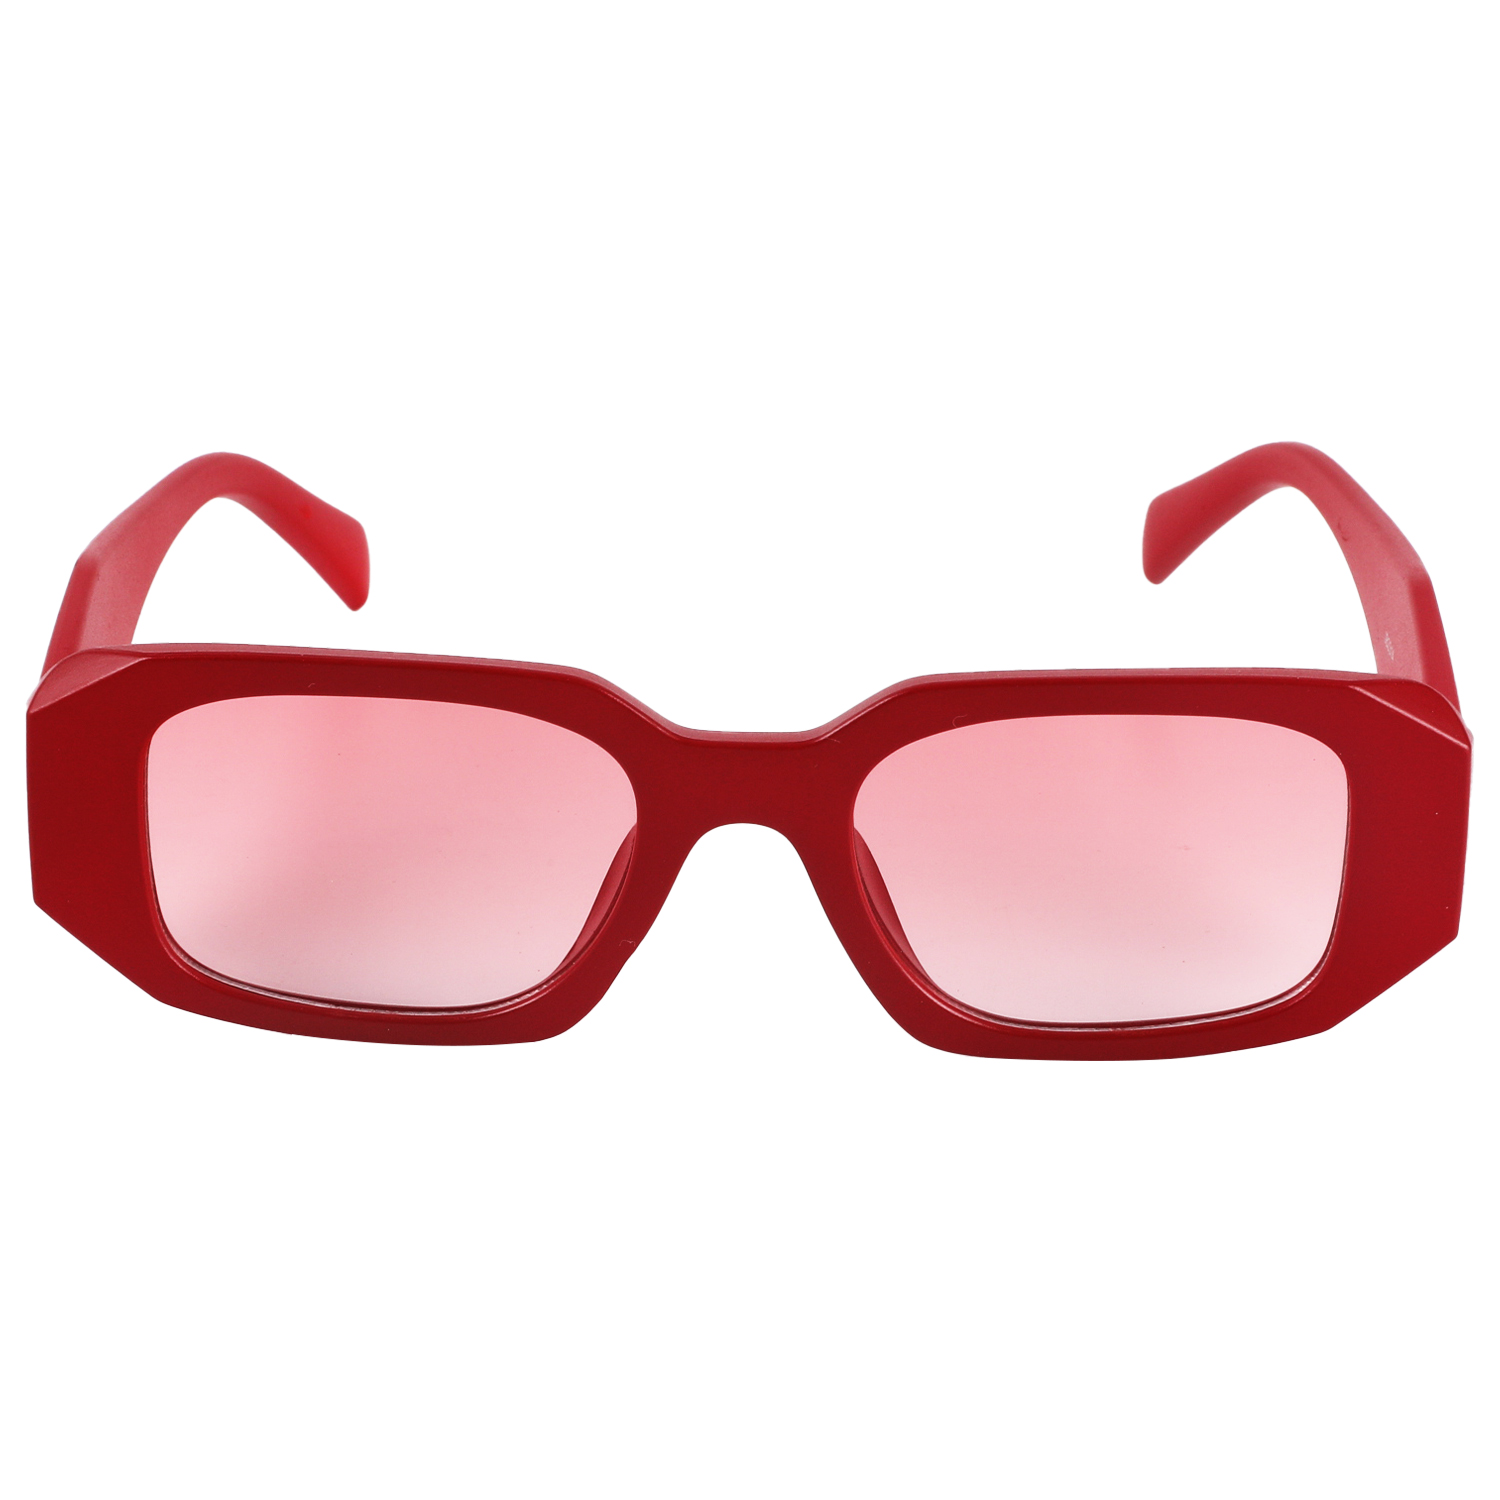 2023年新款时尚太阳眼镜 订制 礼品促销 防紫外线太阳眼镜JB2314详情5